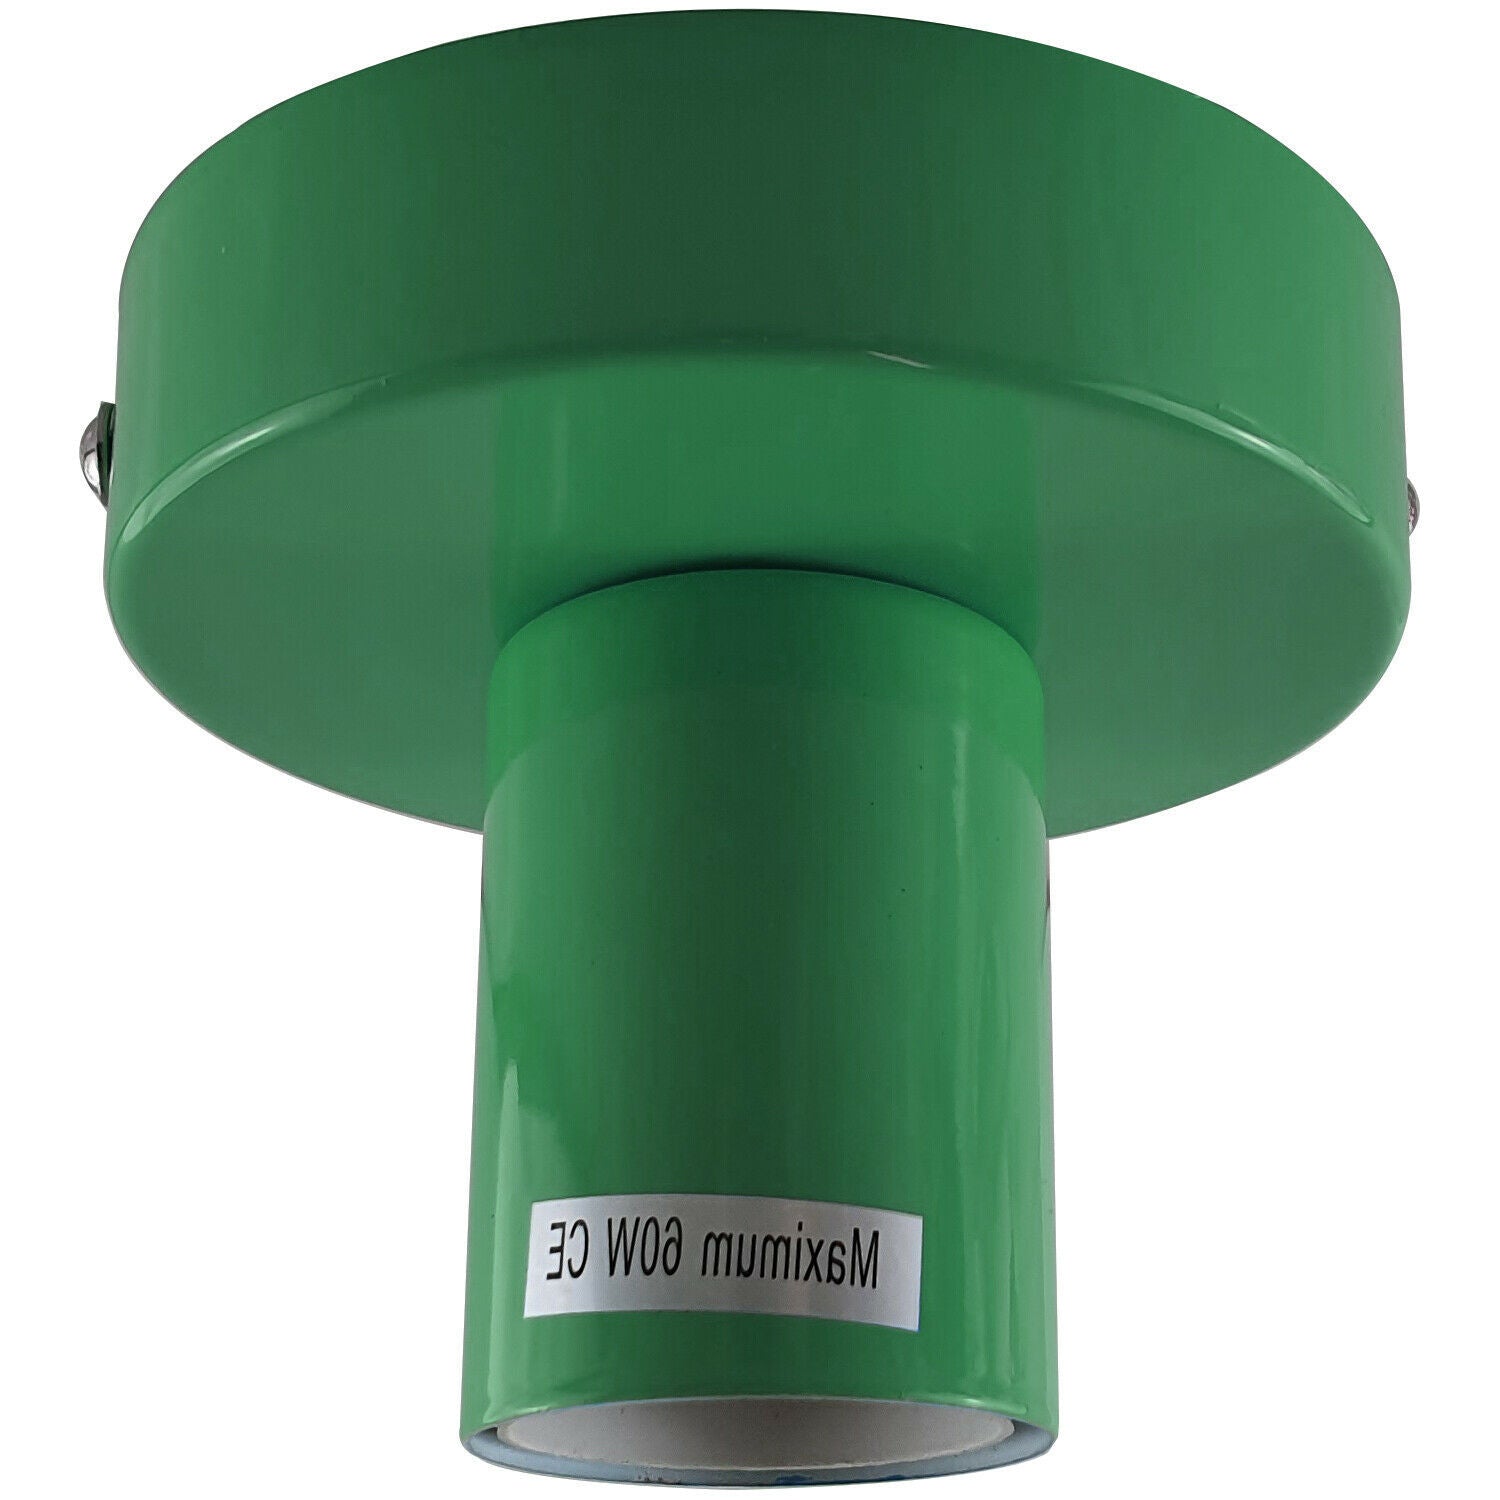 Green Flush Mount Ceiling Light Fitting~1688 - LEDSone UK Ltd